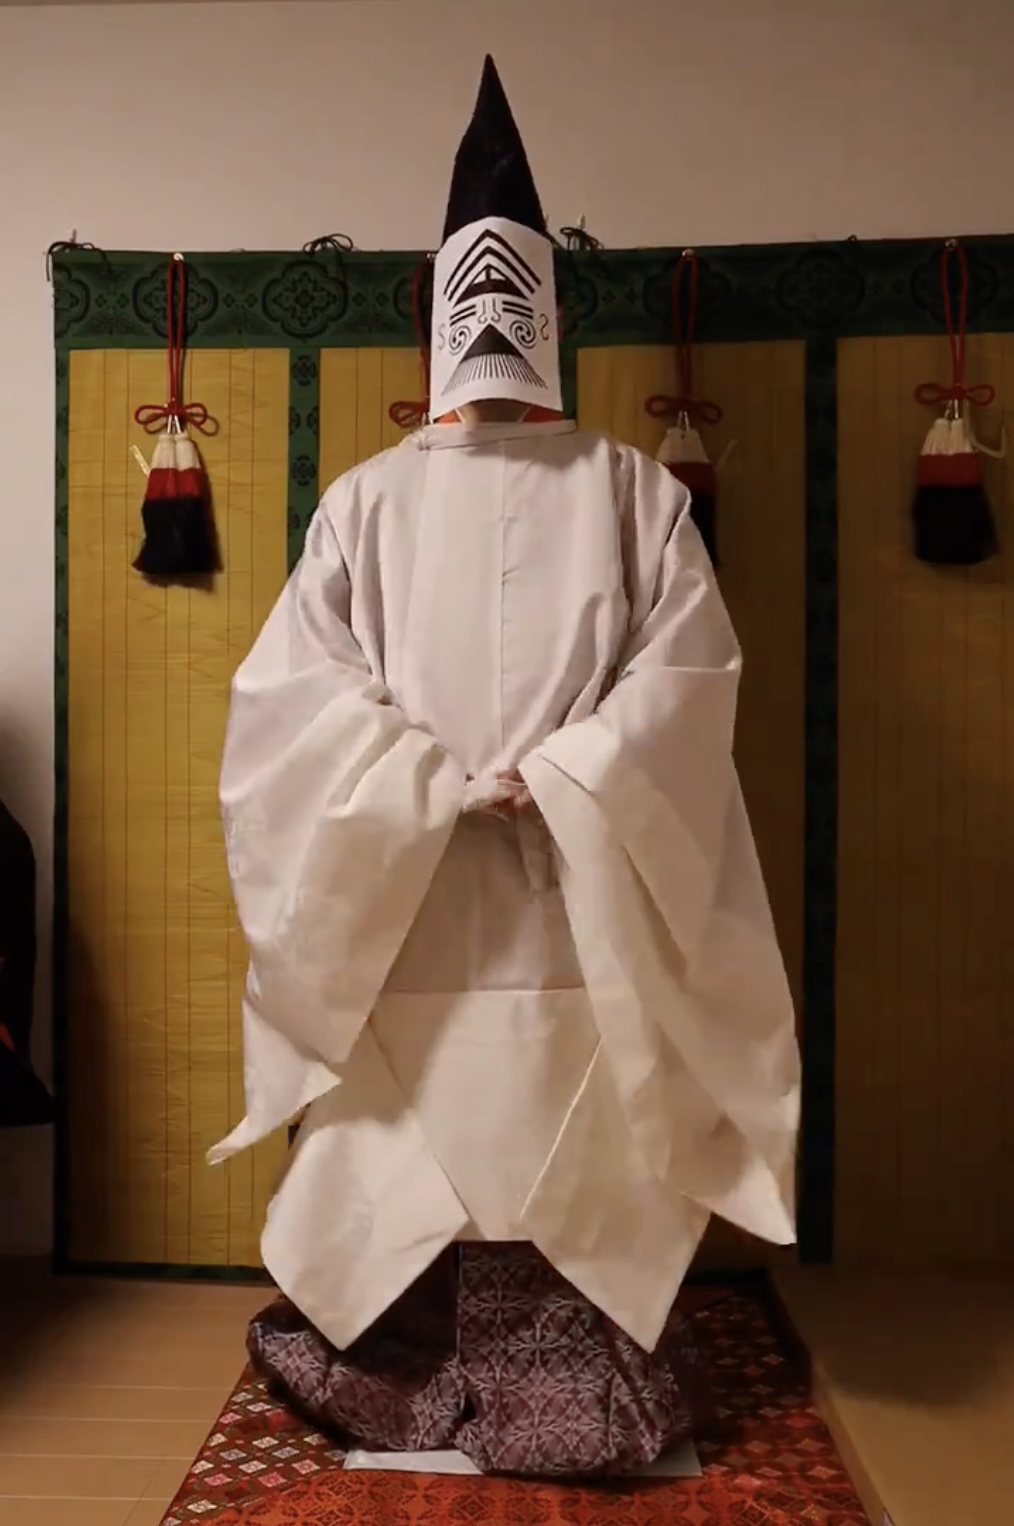 伝統的な装束を身にまとった能楽の演者が、和室で背後から撮影されています。